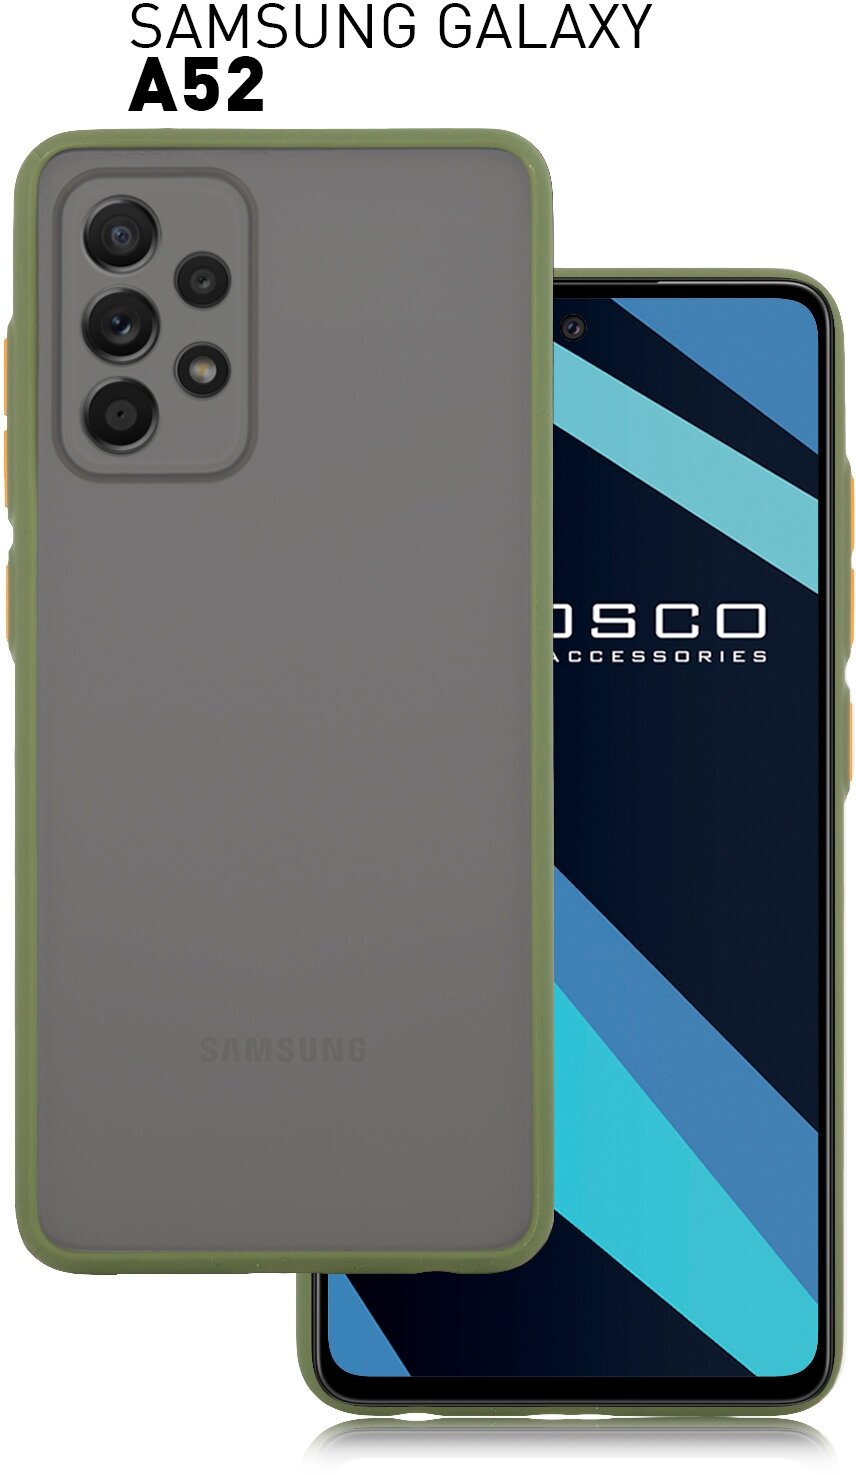 Пластиковый чехол ROSCO для Samsung Galaxy A52 (Самсунг Галакси А52) противоударный с силиконовыми вставками полупрозрачная панель матовый зеленый